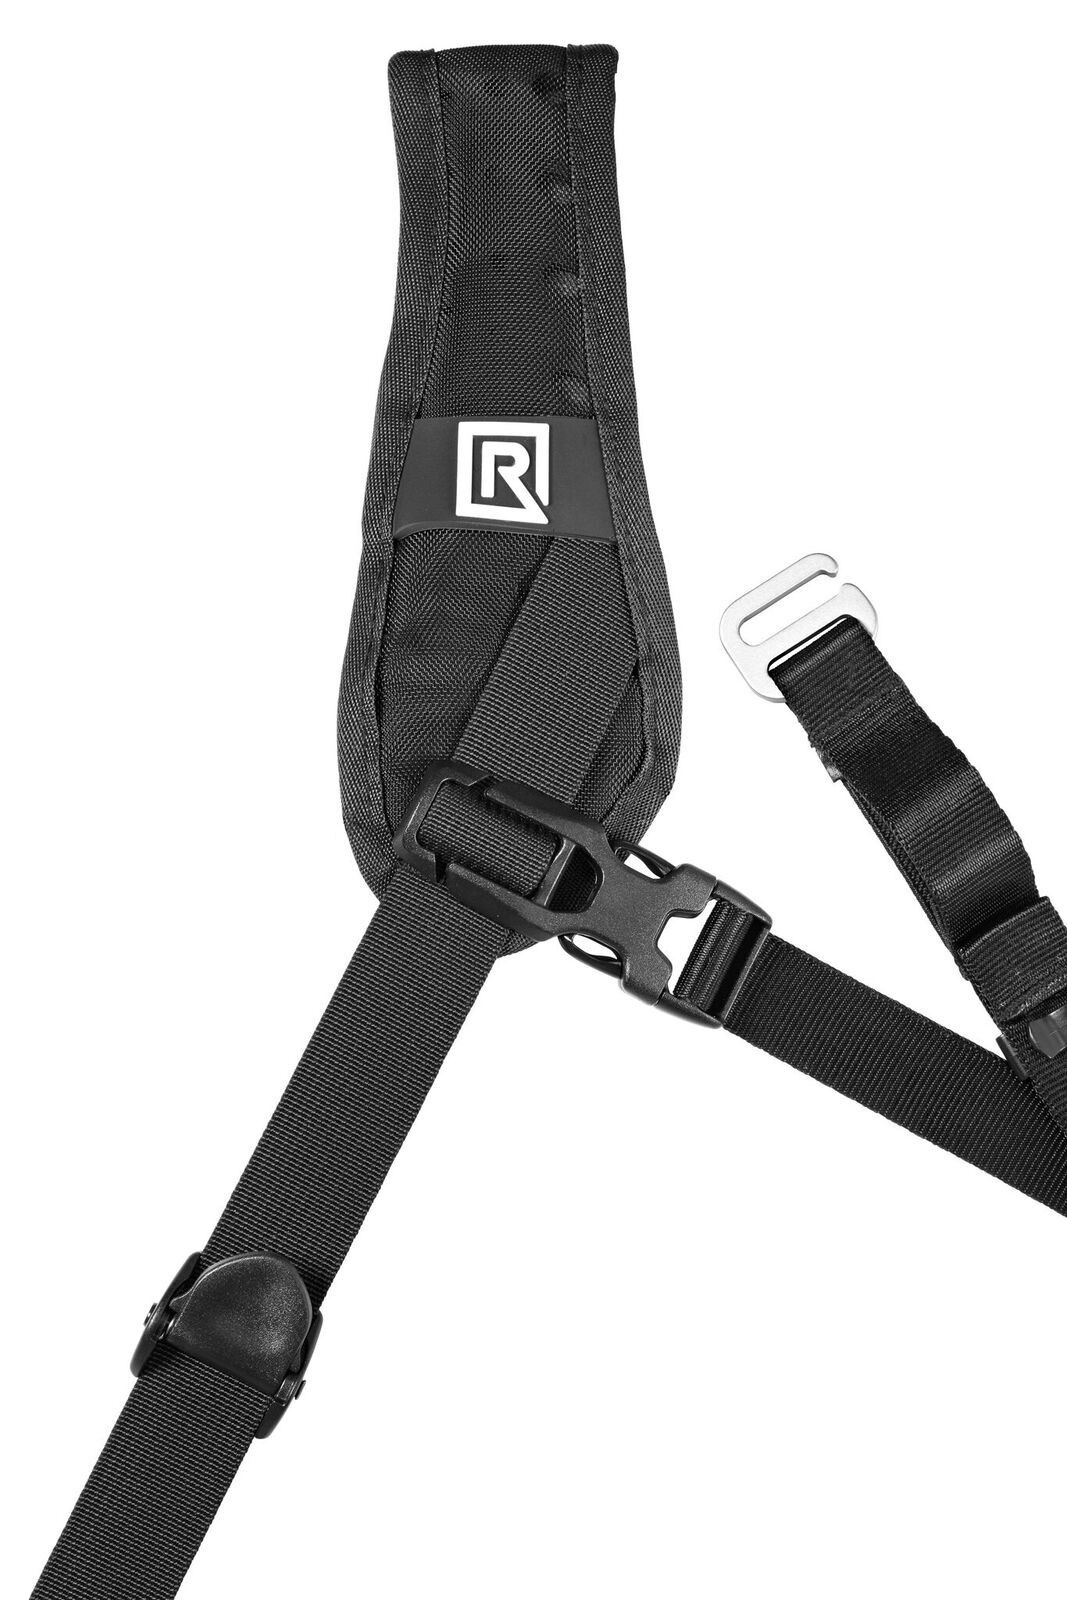 Blackrapid Curve breathe sling Camera Strap with Padded Shoulder